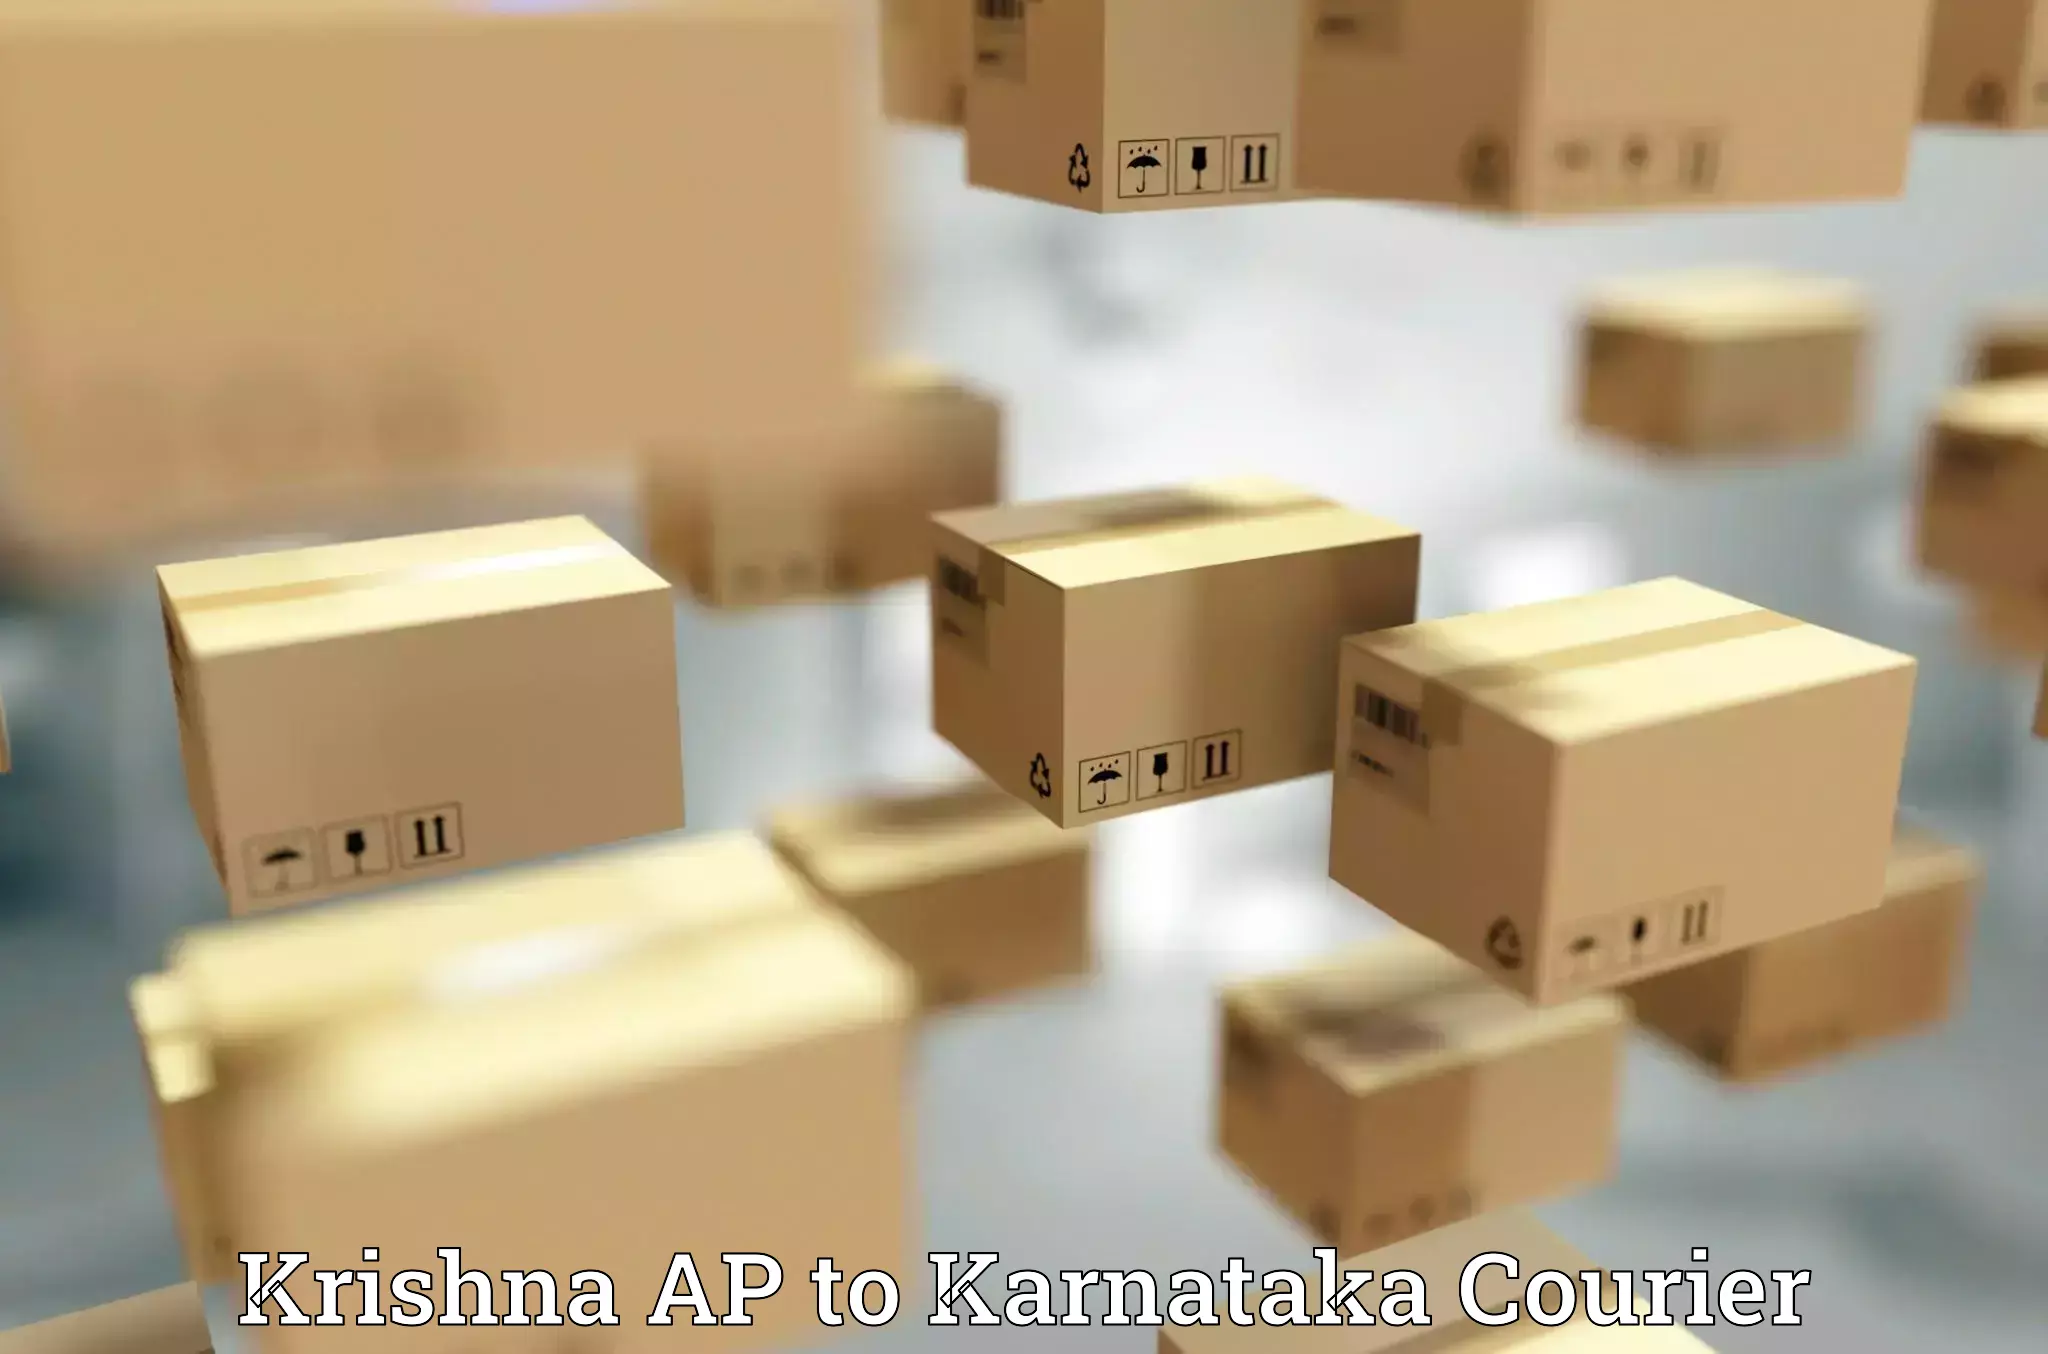 International parcel service Krishna AP to Kushalnagar